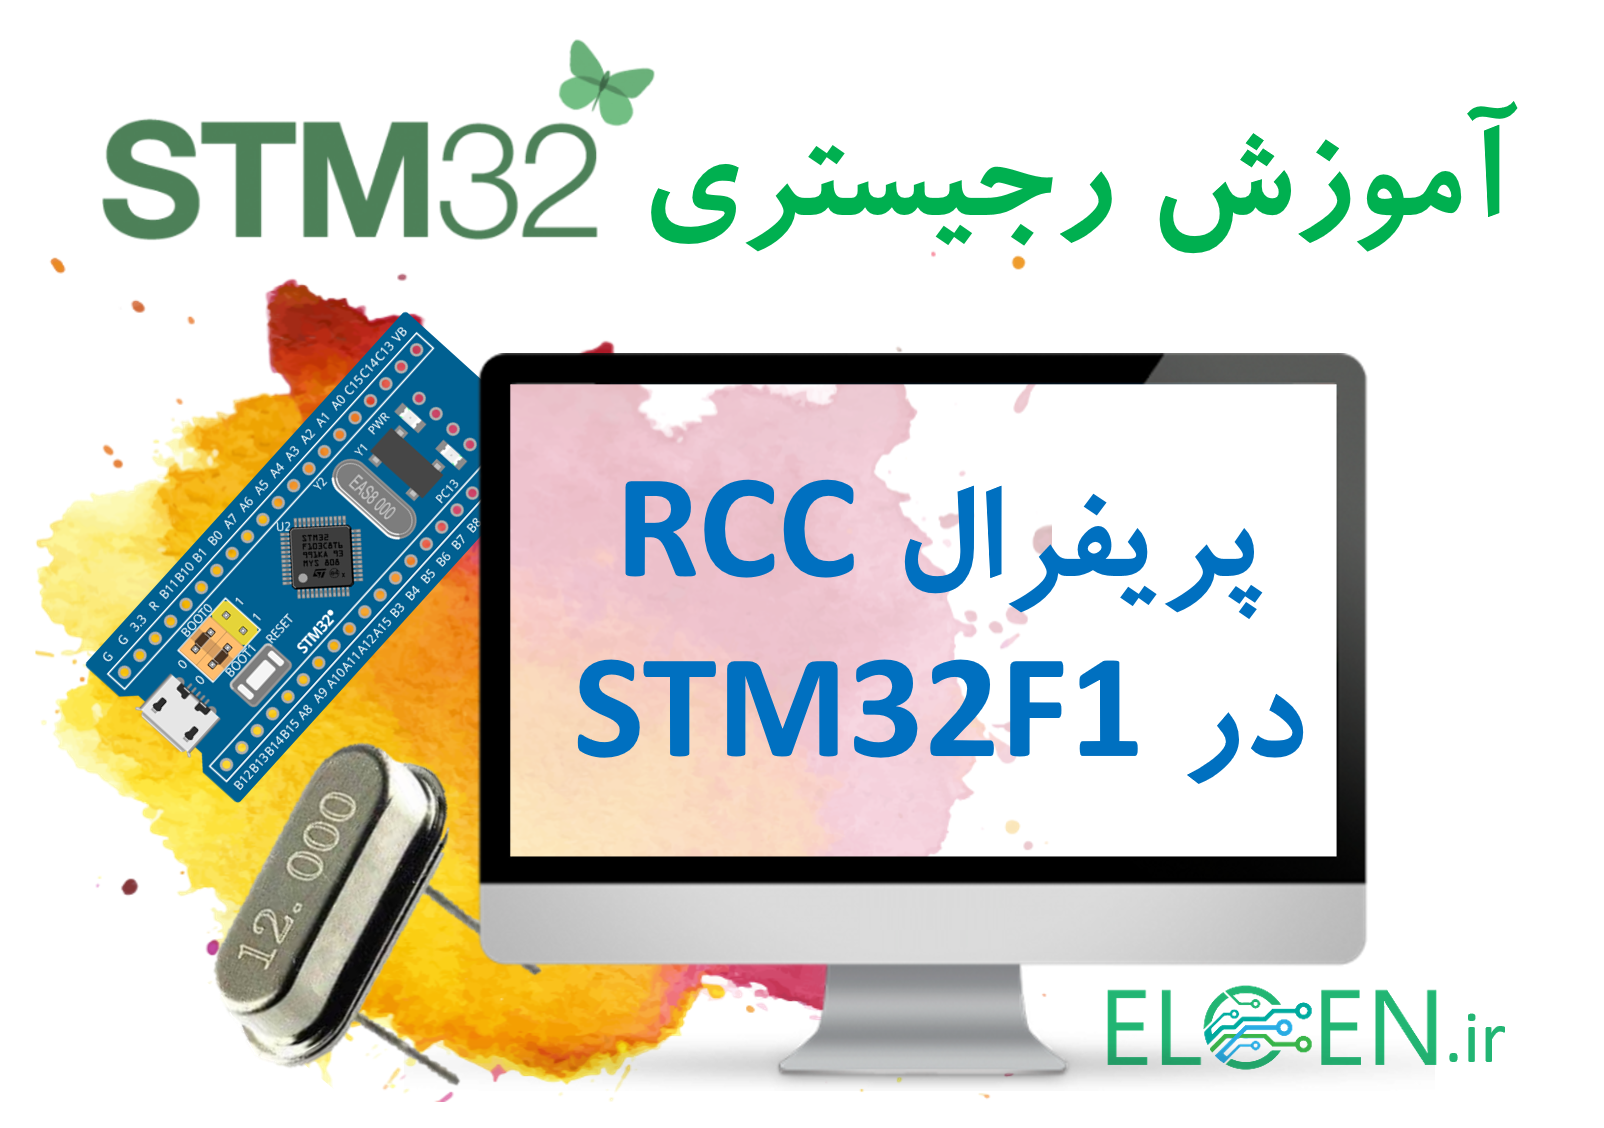 آموزش STM32 : پریفرال RCC در میکروکنترلر STM32F1 و مدیریت کلاک